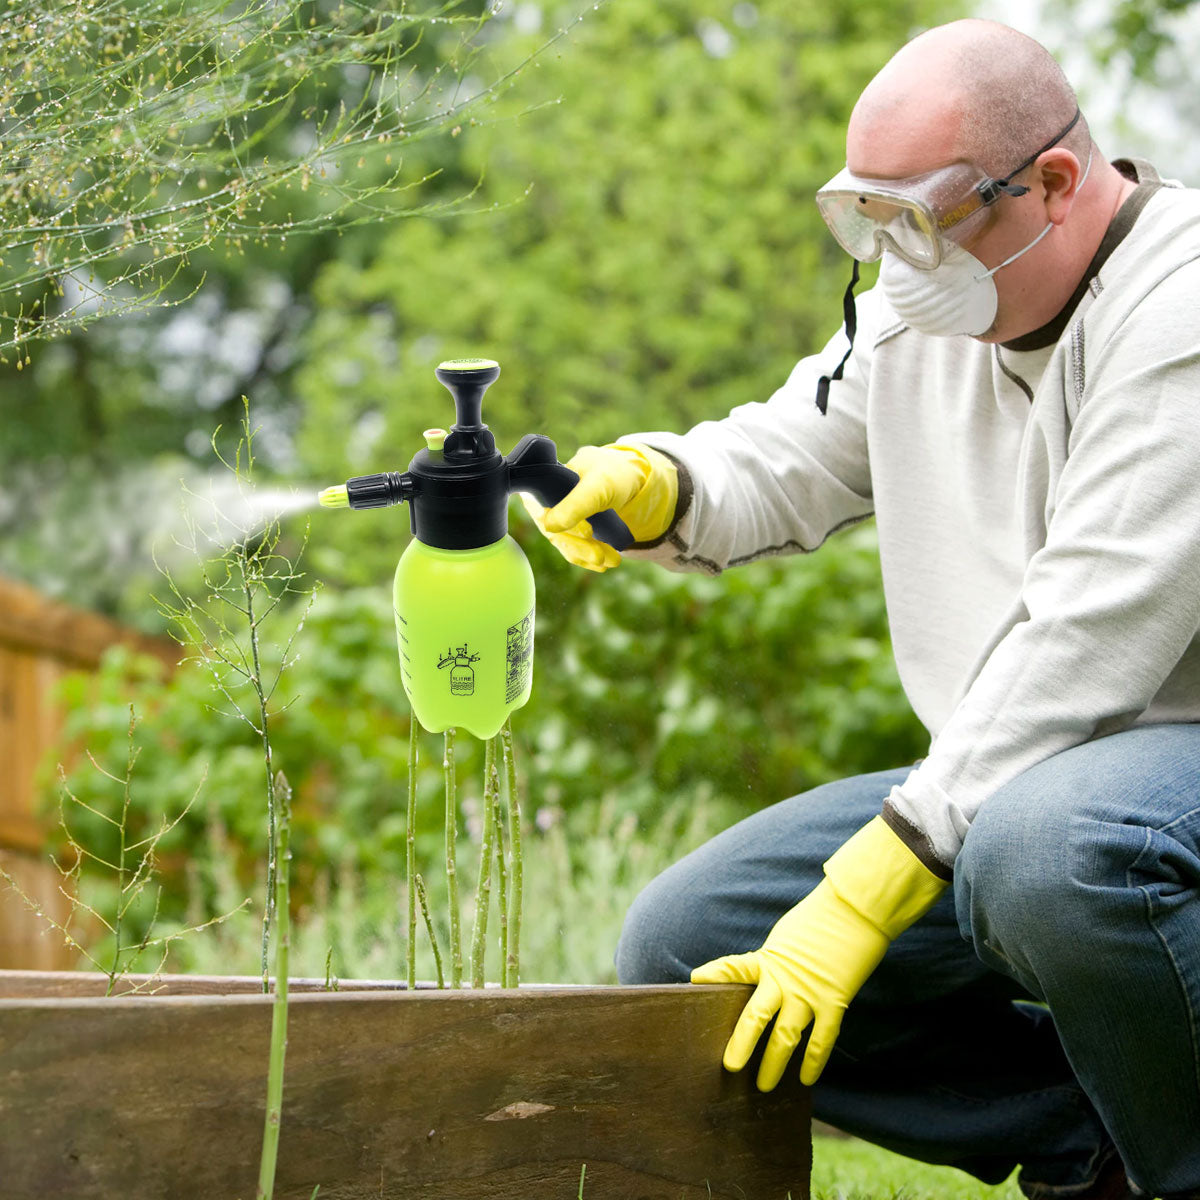 Portable Garden Spray Water, Garden Chemical Spray